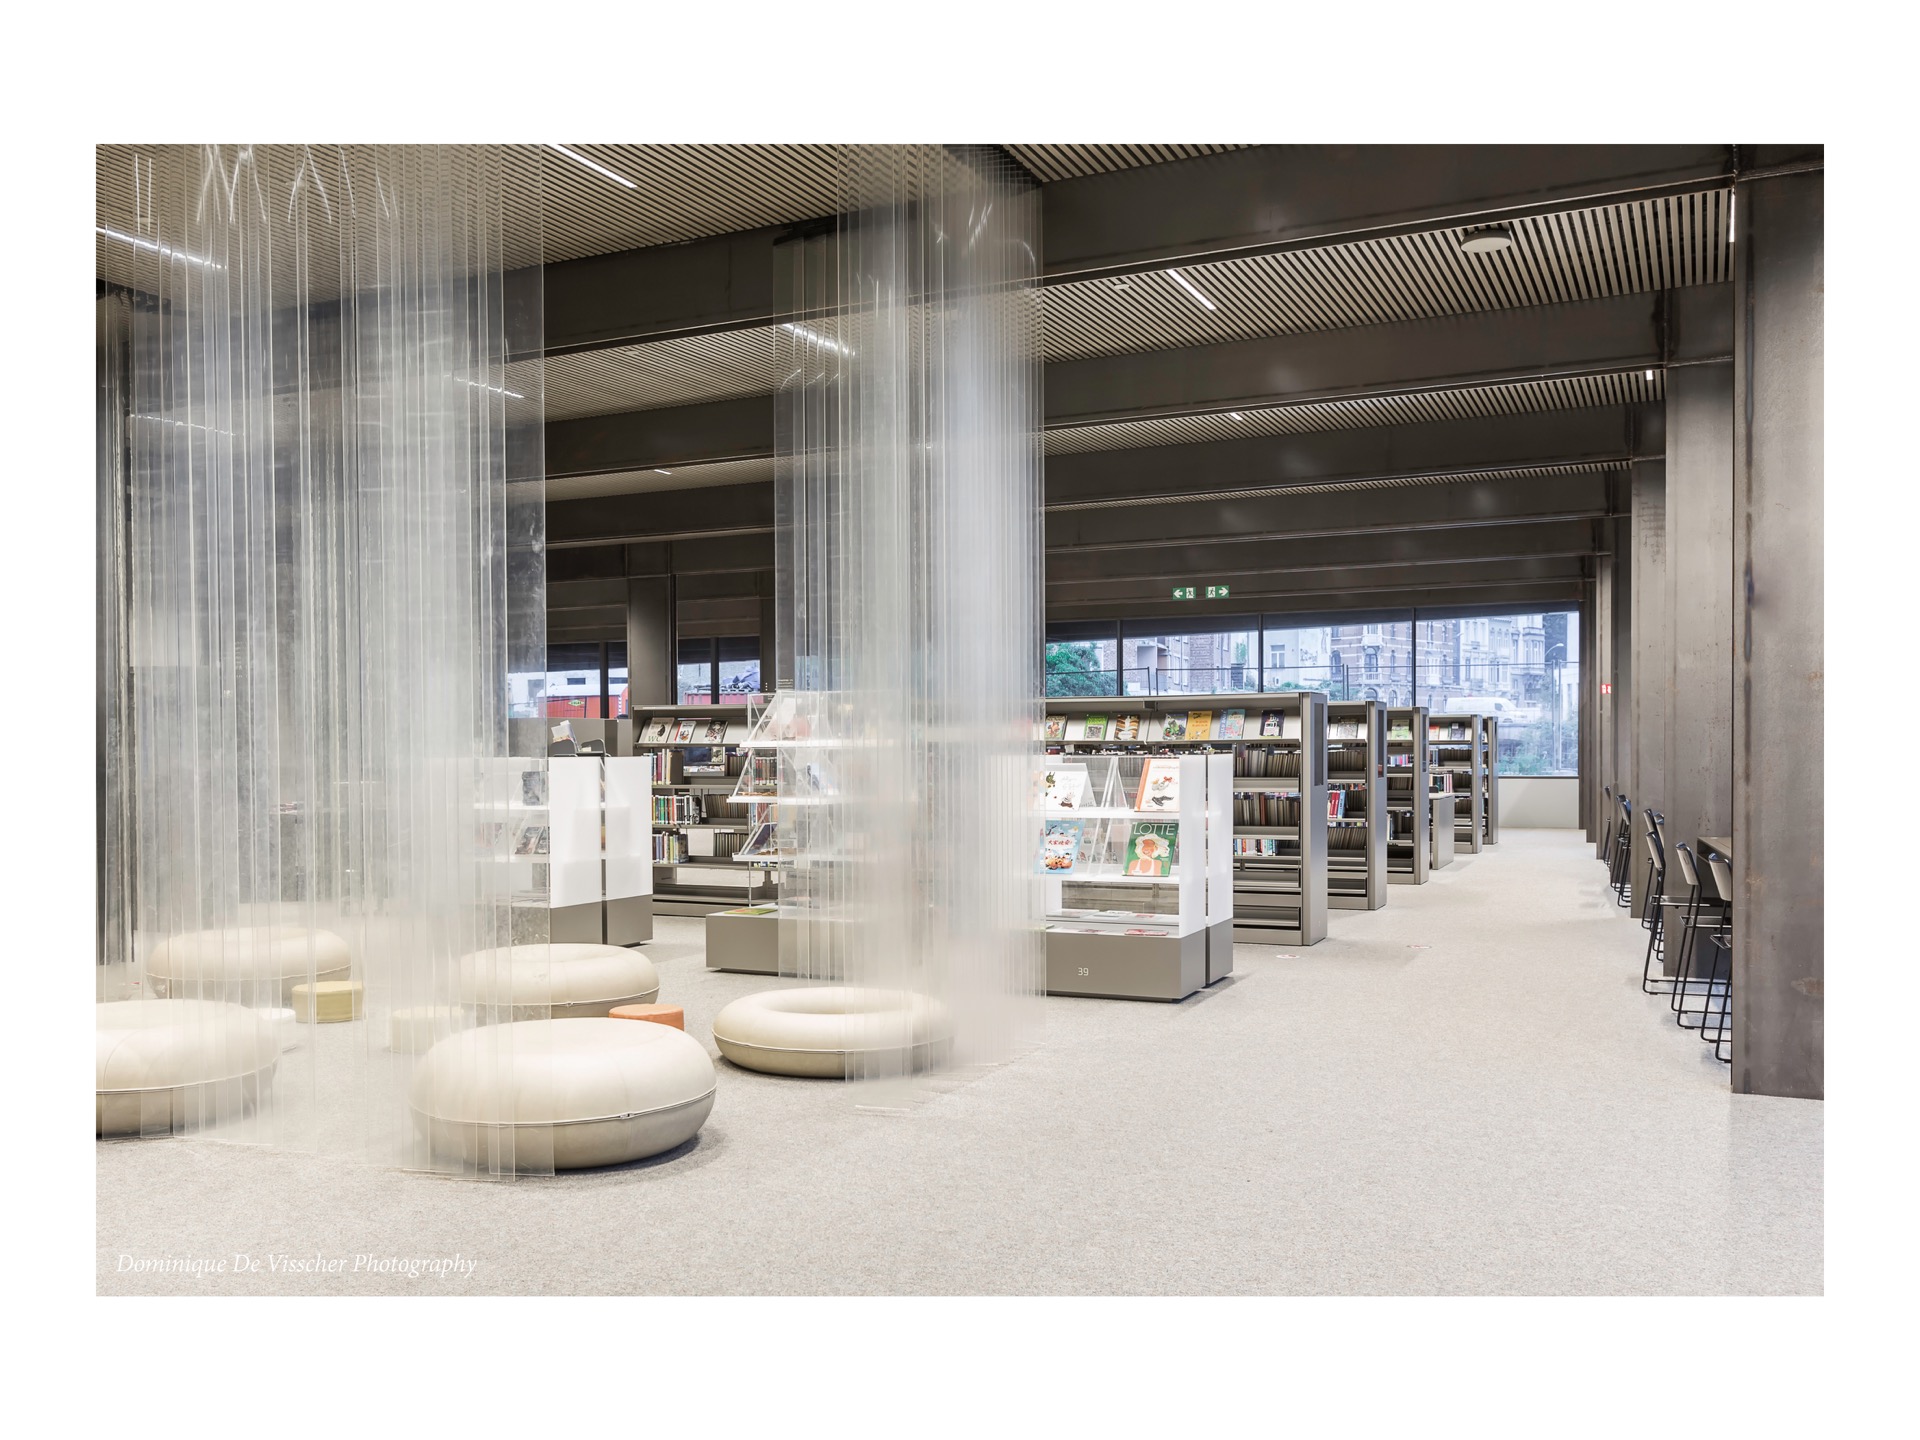 De Krook Gent library building architecture design interior view